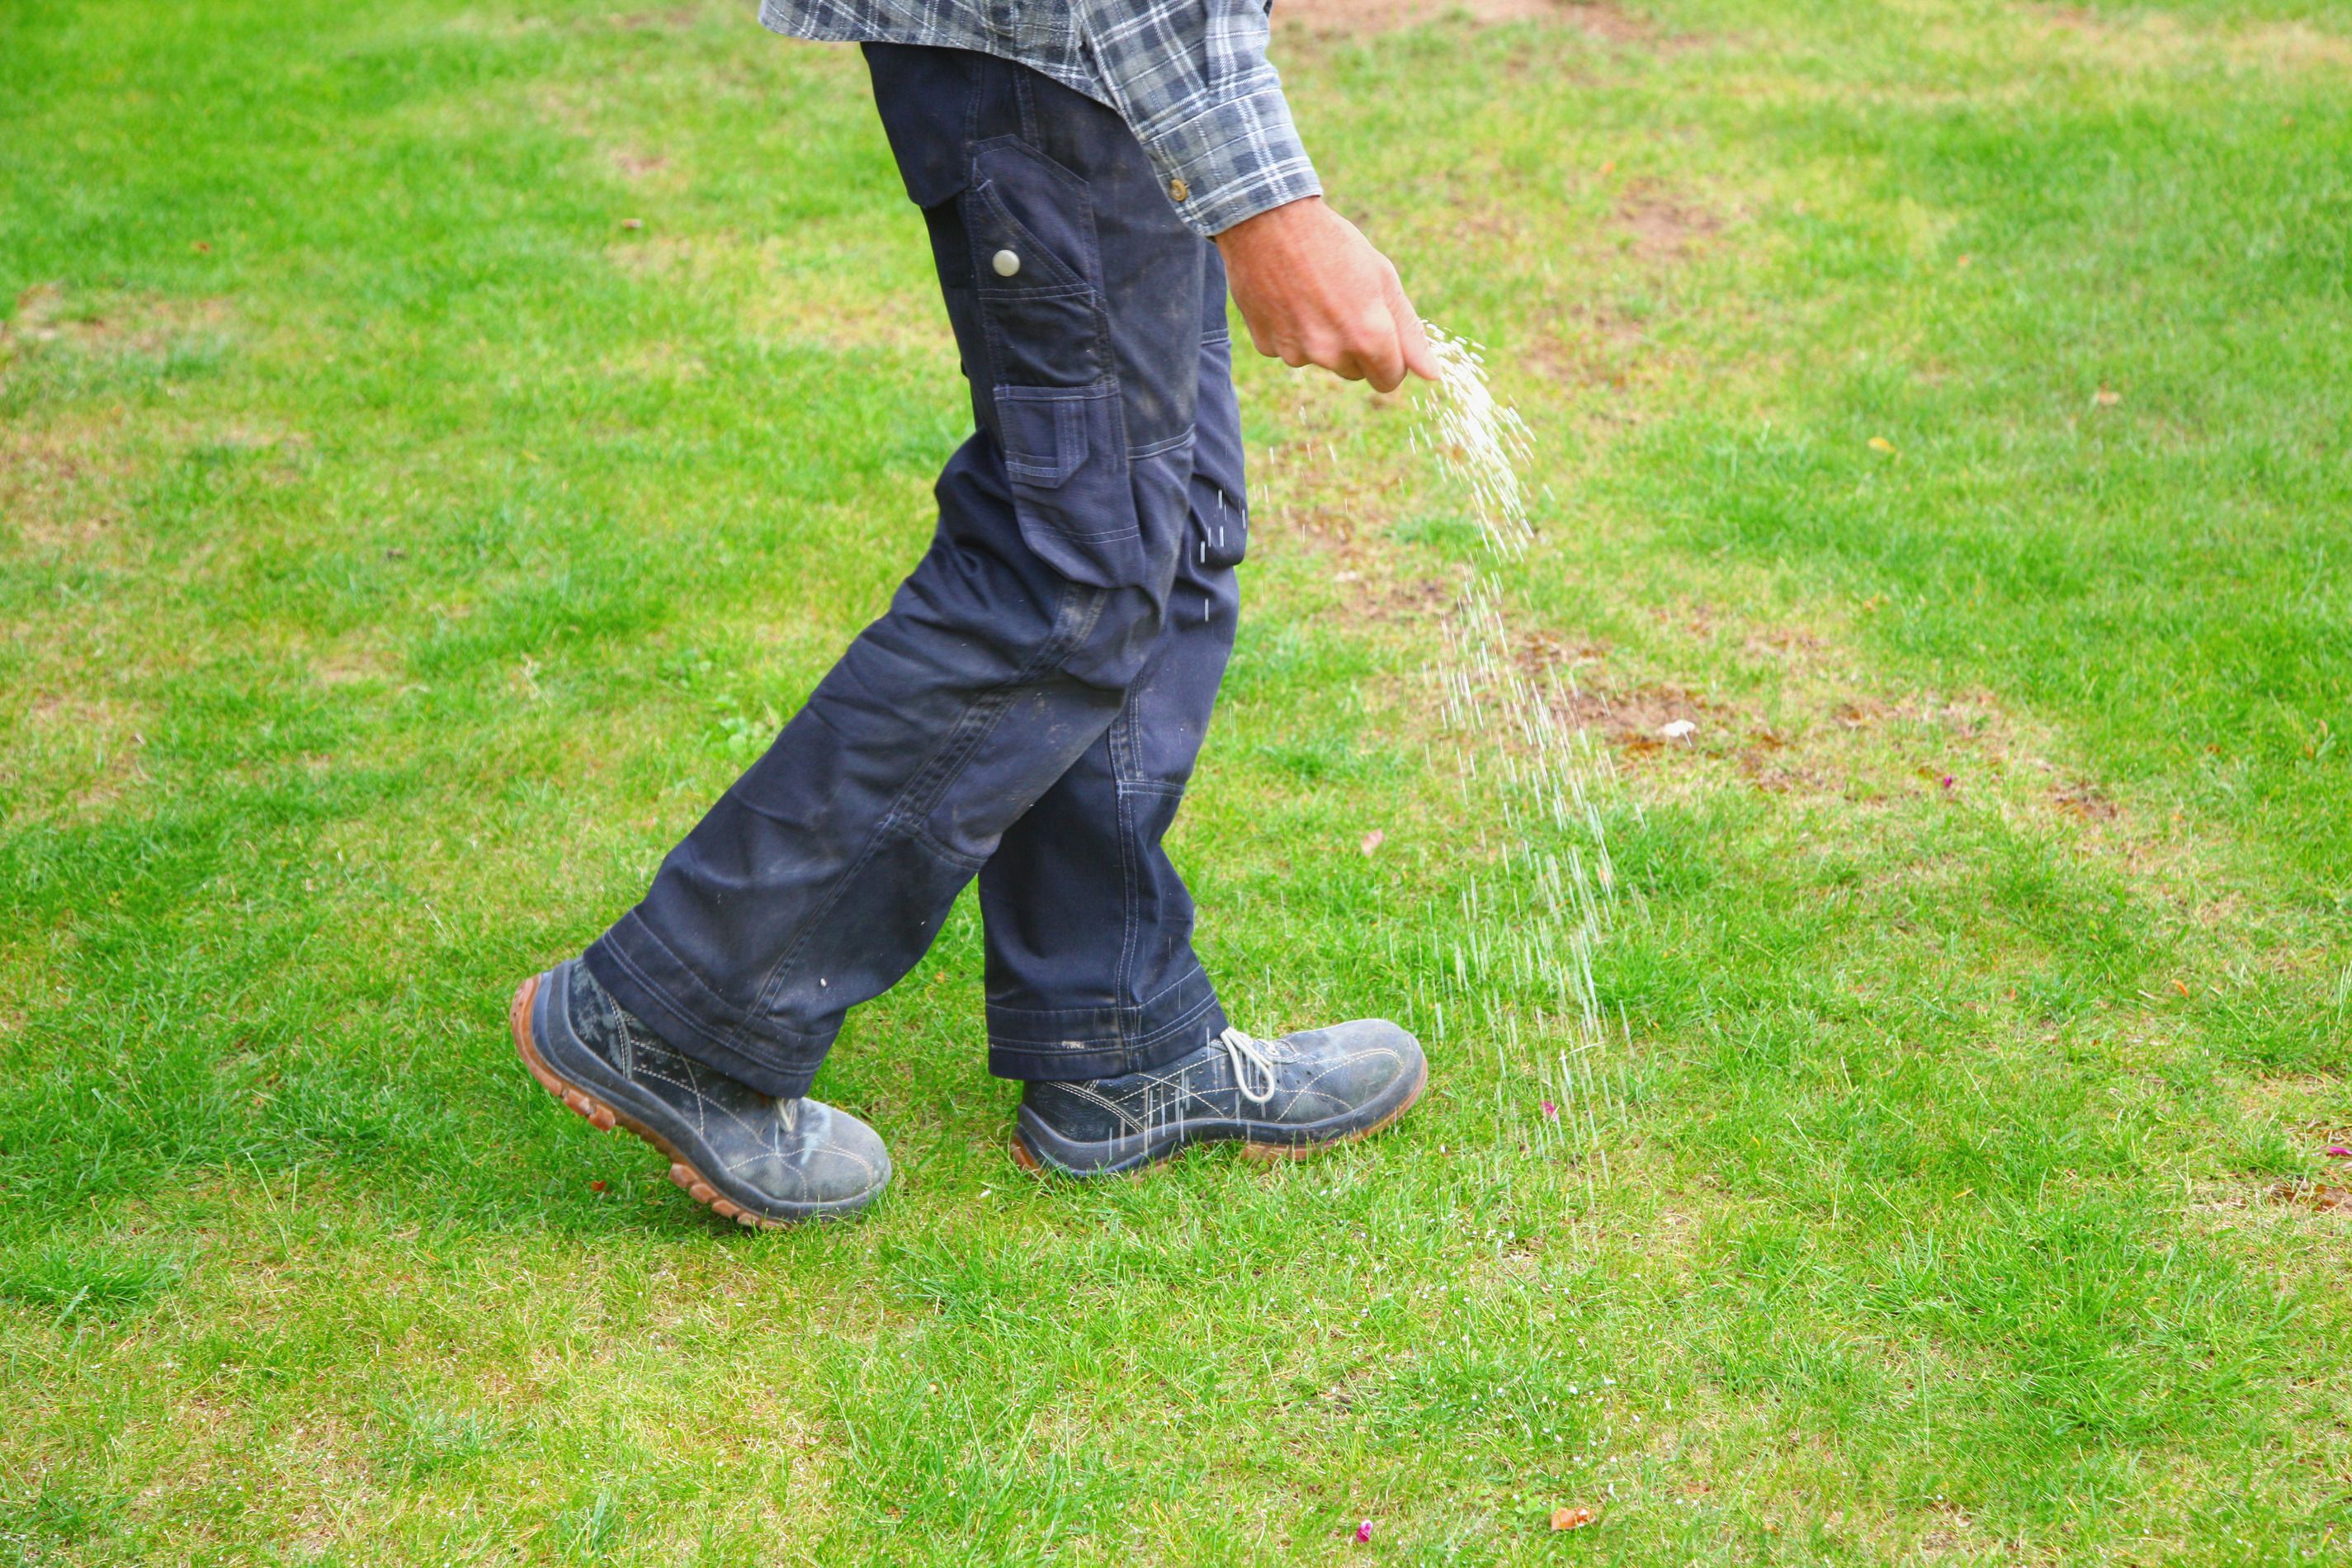 Man walking on lawn spreading fertilizer